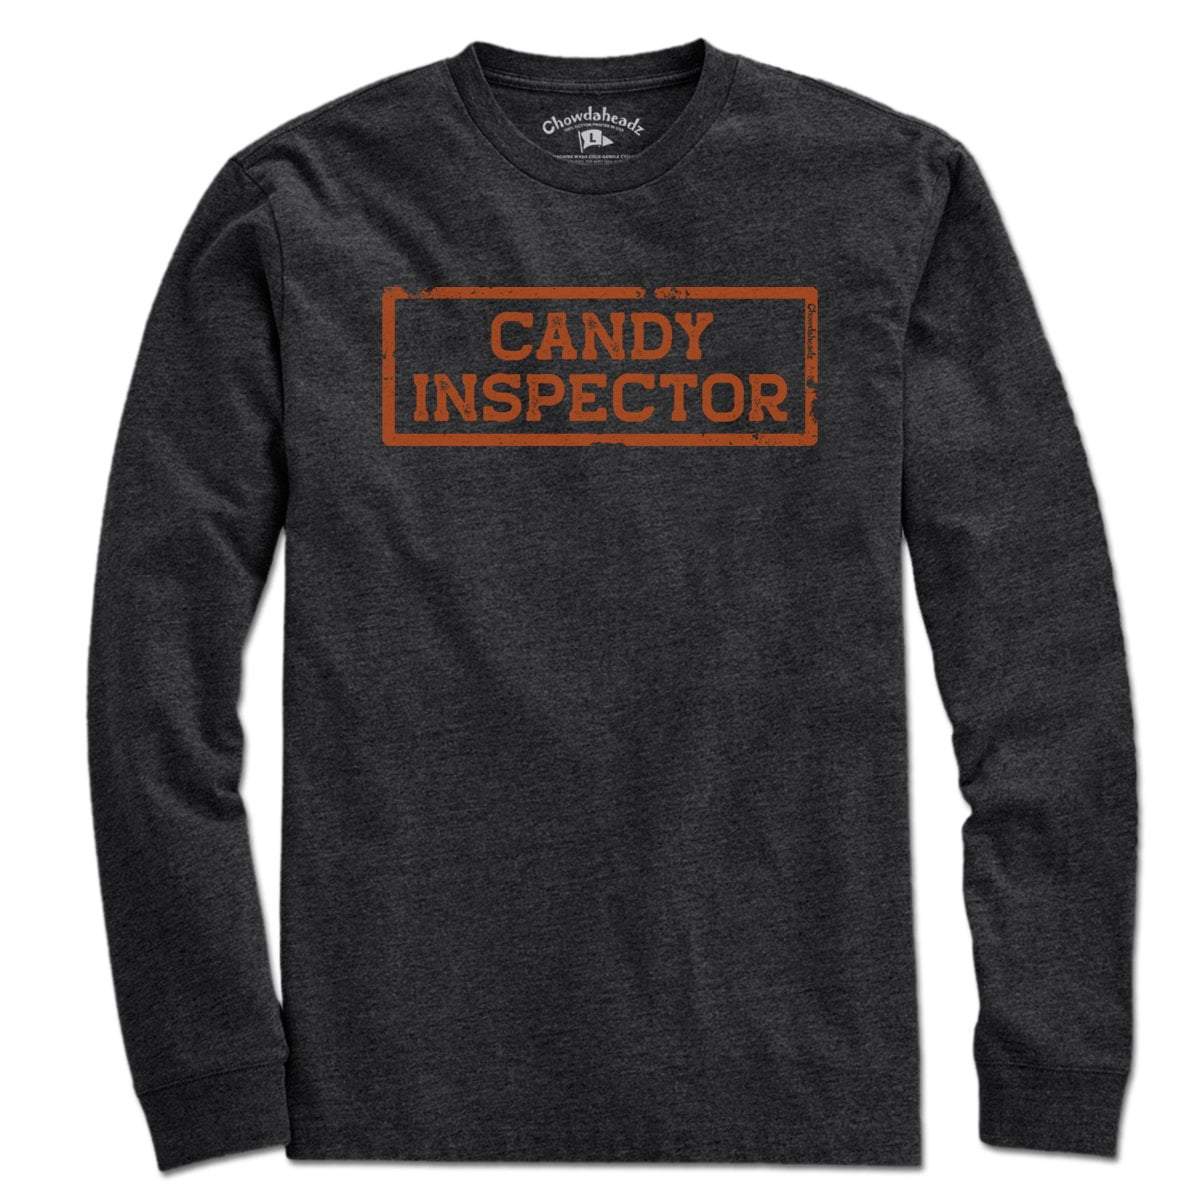 Candy Inspector T-Shirt - Chowdaheadz